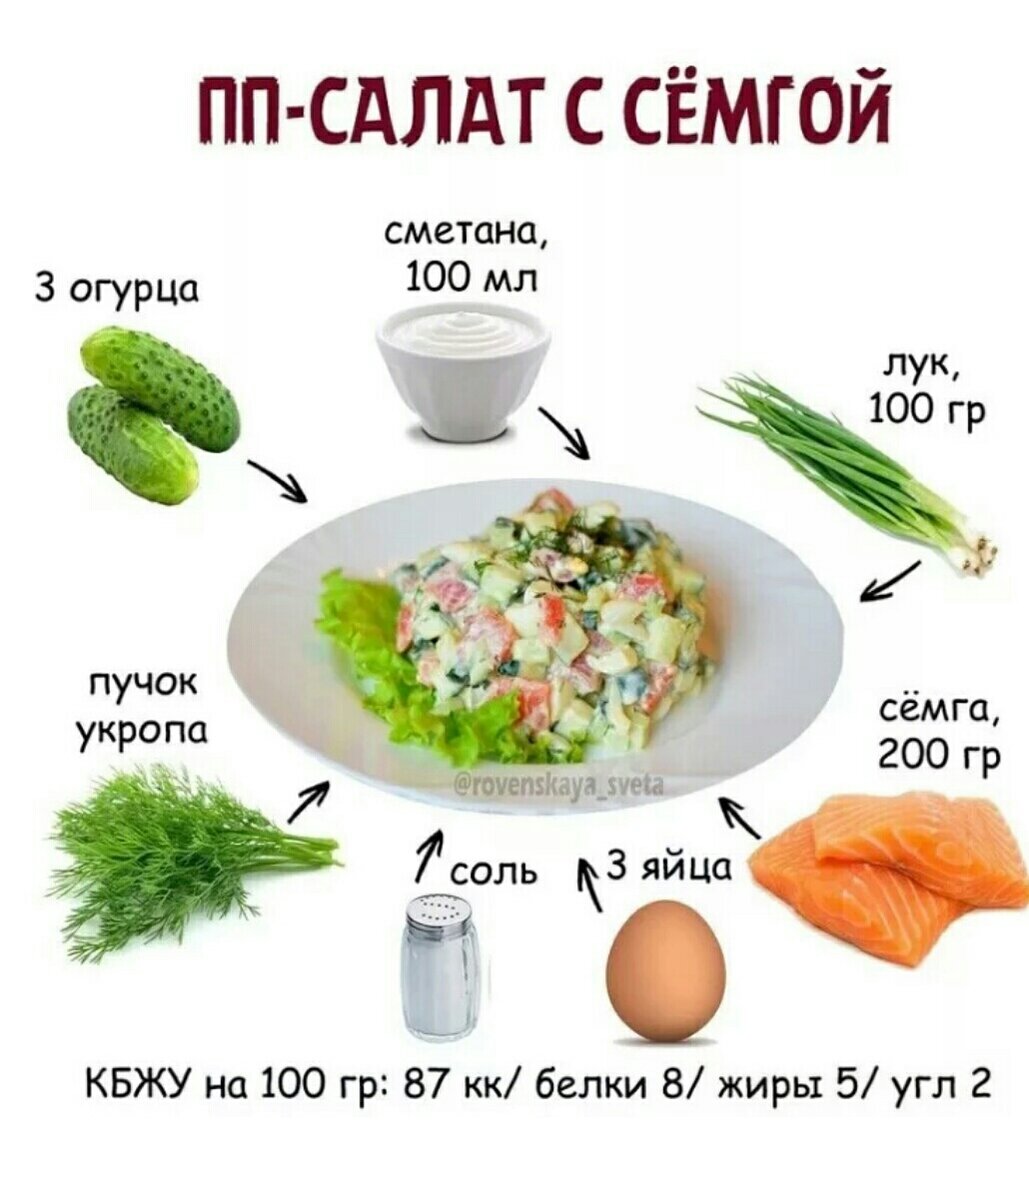 Салат огурец яйцо сметана калорийность. Салаты на каждый день для похудения. Простые рецепты здорового питания. ПП салаты рецепты. Рецепты салатов ПП на каждый день.